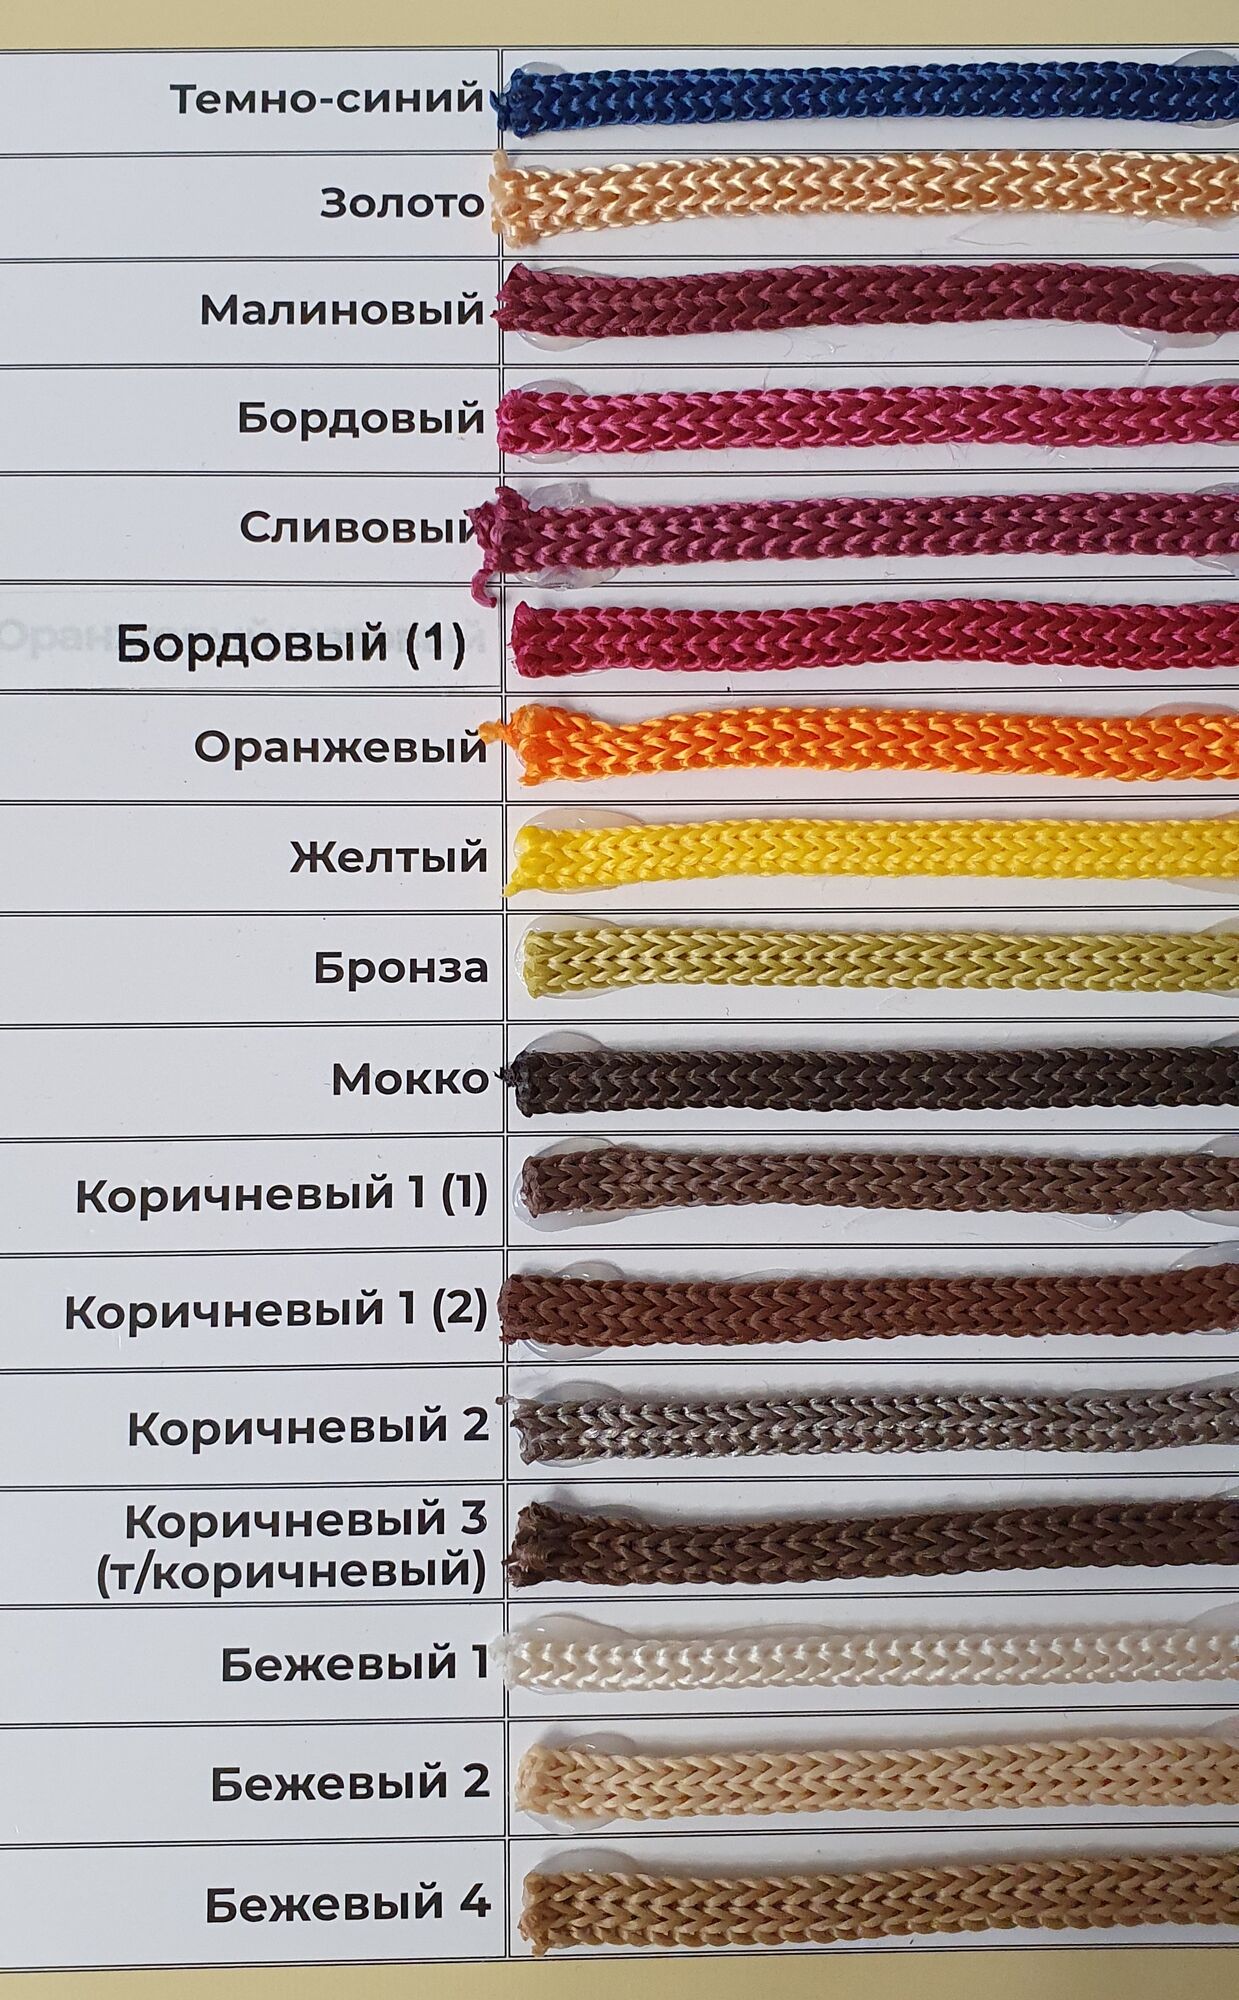 карта цветов полипропиленового шнура 5